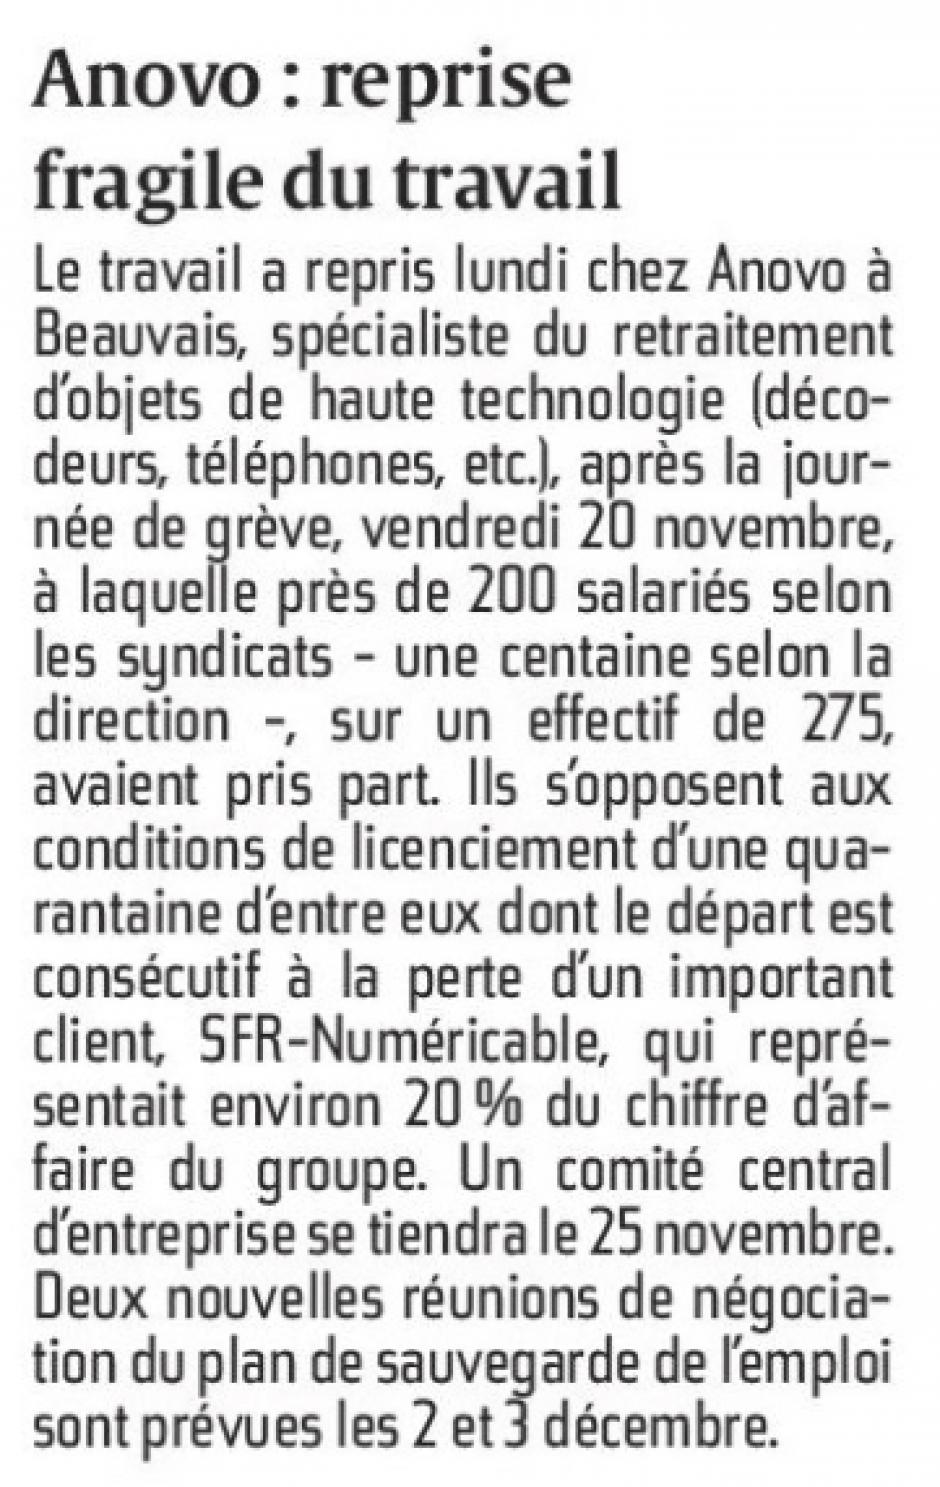 20151124-CP-Beauvais-Anovo : reprise fragile du travail